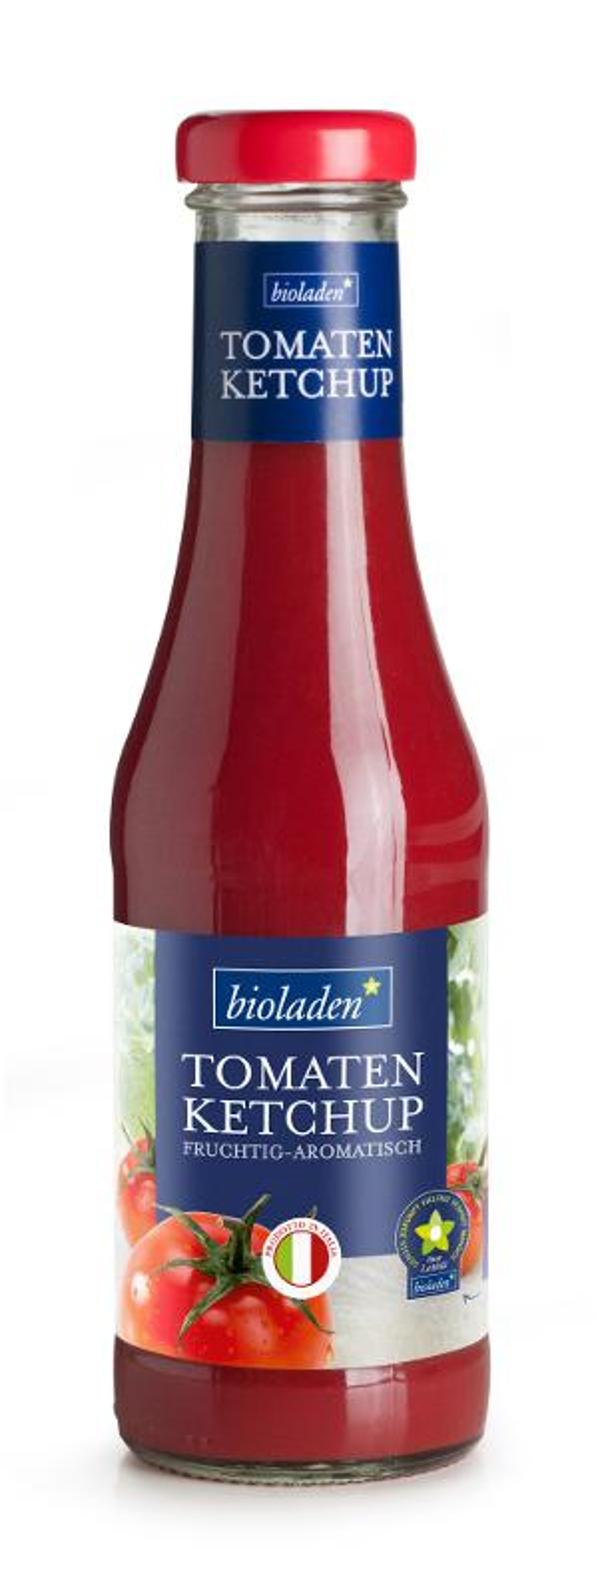 Produktfoto zu Tomatenketchup von bioladen